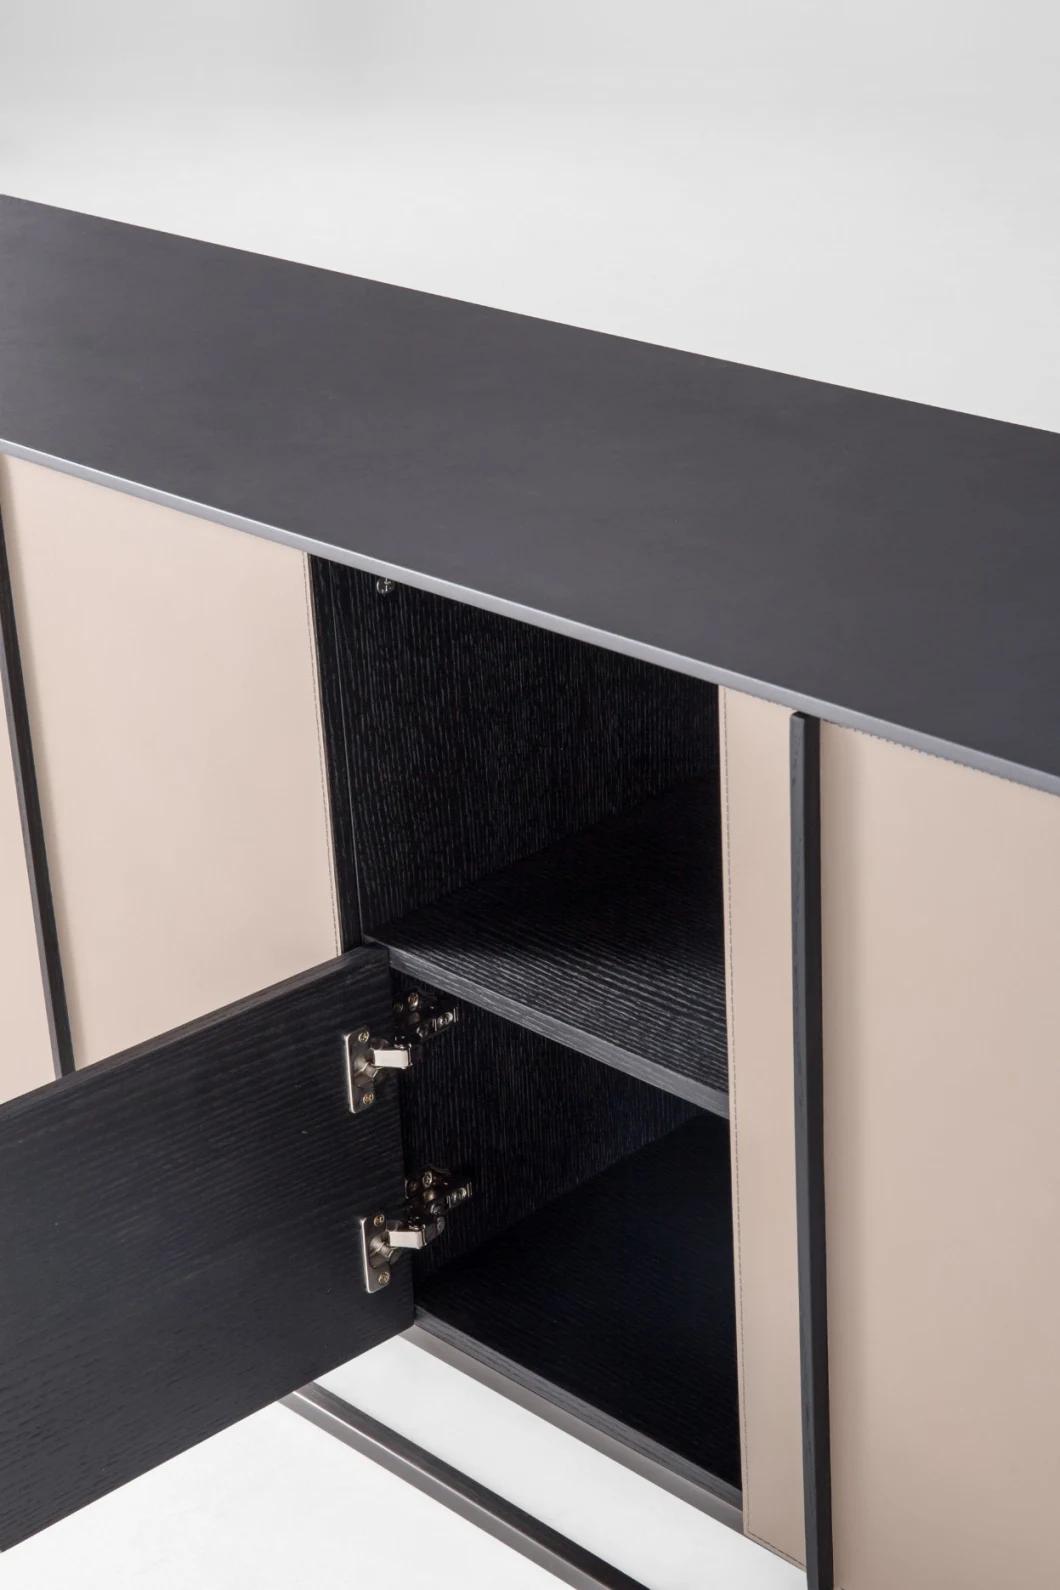 Modern Design Leather Living Room Furniture TV Stands TV Cabinet Sideboard Cabinet 922 Series